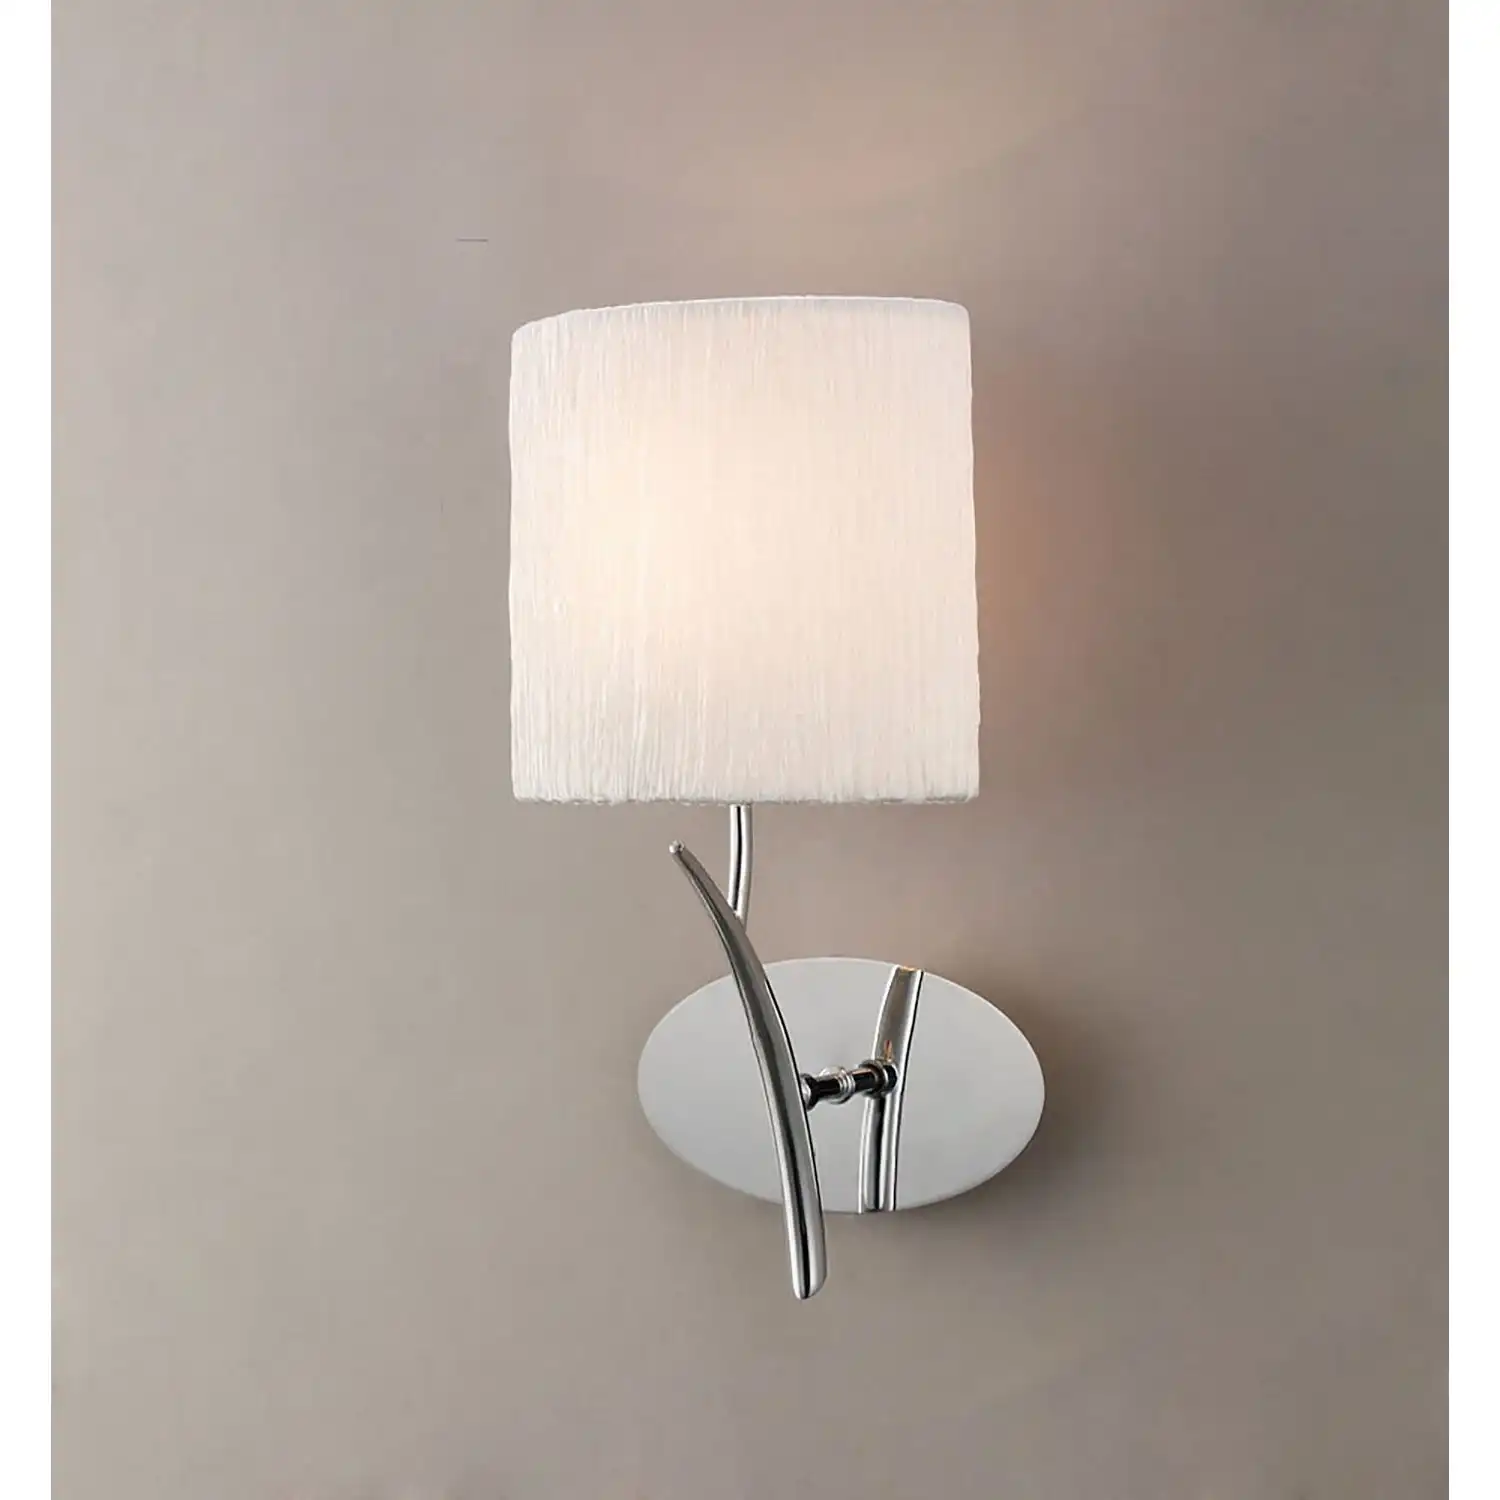 Eve Wall Lamp 1 Light E27, Polished Chrome With White Oval Shade